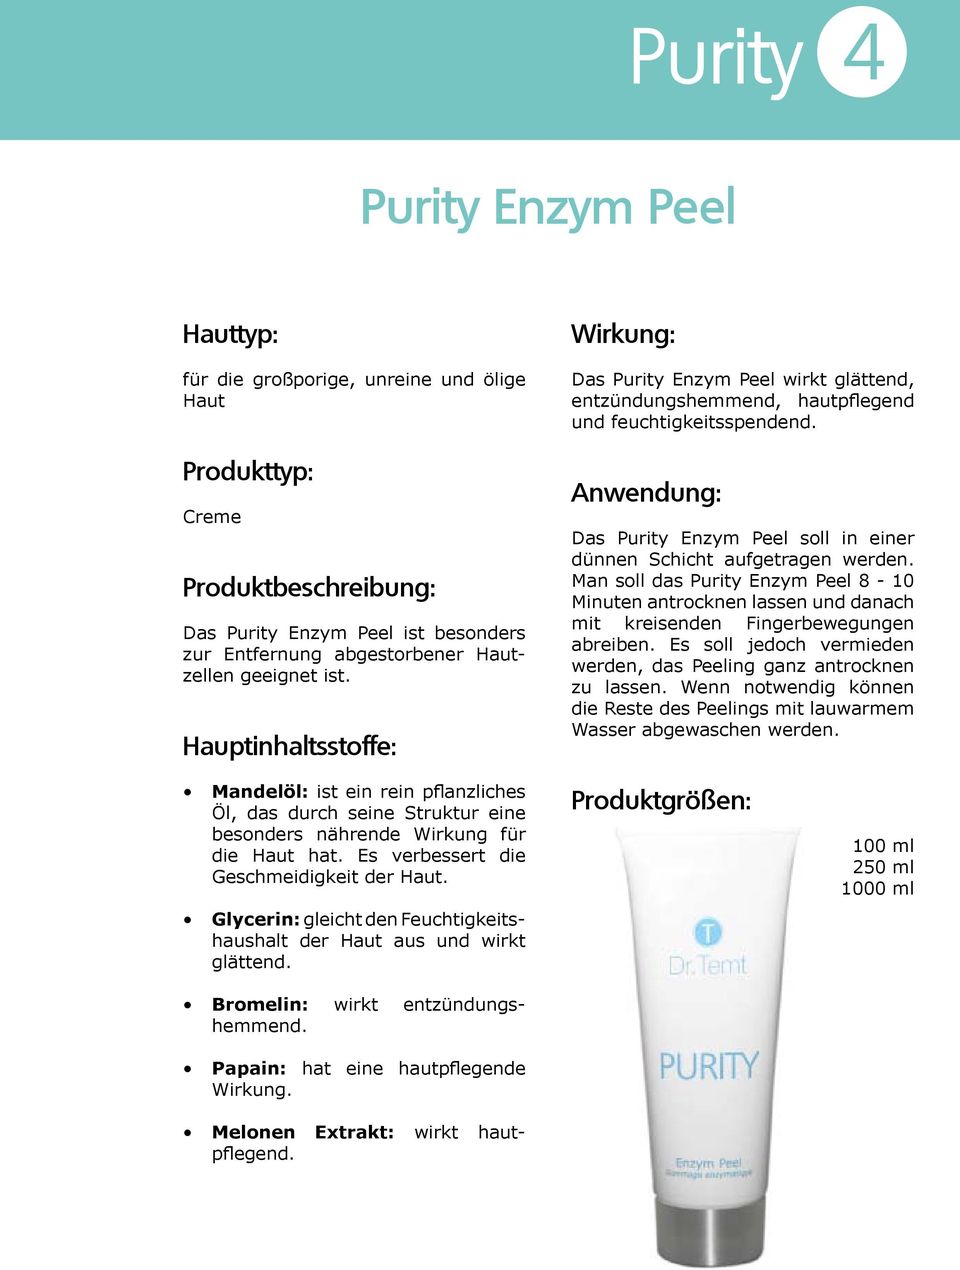 Man soll das Purity Enzym Peel 8-10 Minuten antrocknen lassen und danach mit kreisenden Fingerbewegungen abreiben. Es soll jedoch vermieden werden, das Peeling ganz antrocknen zu lassen.